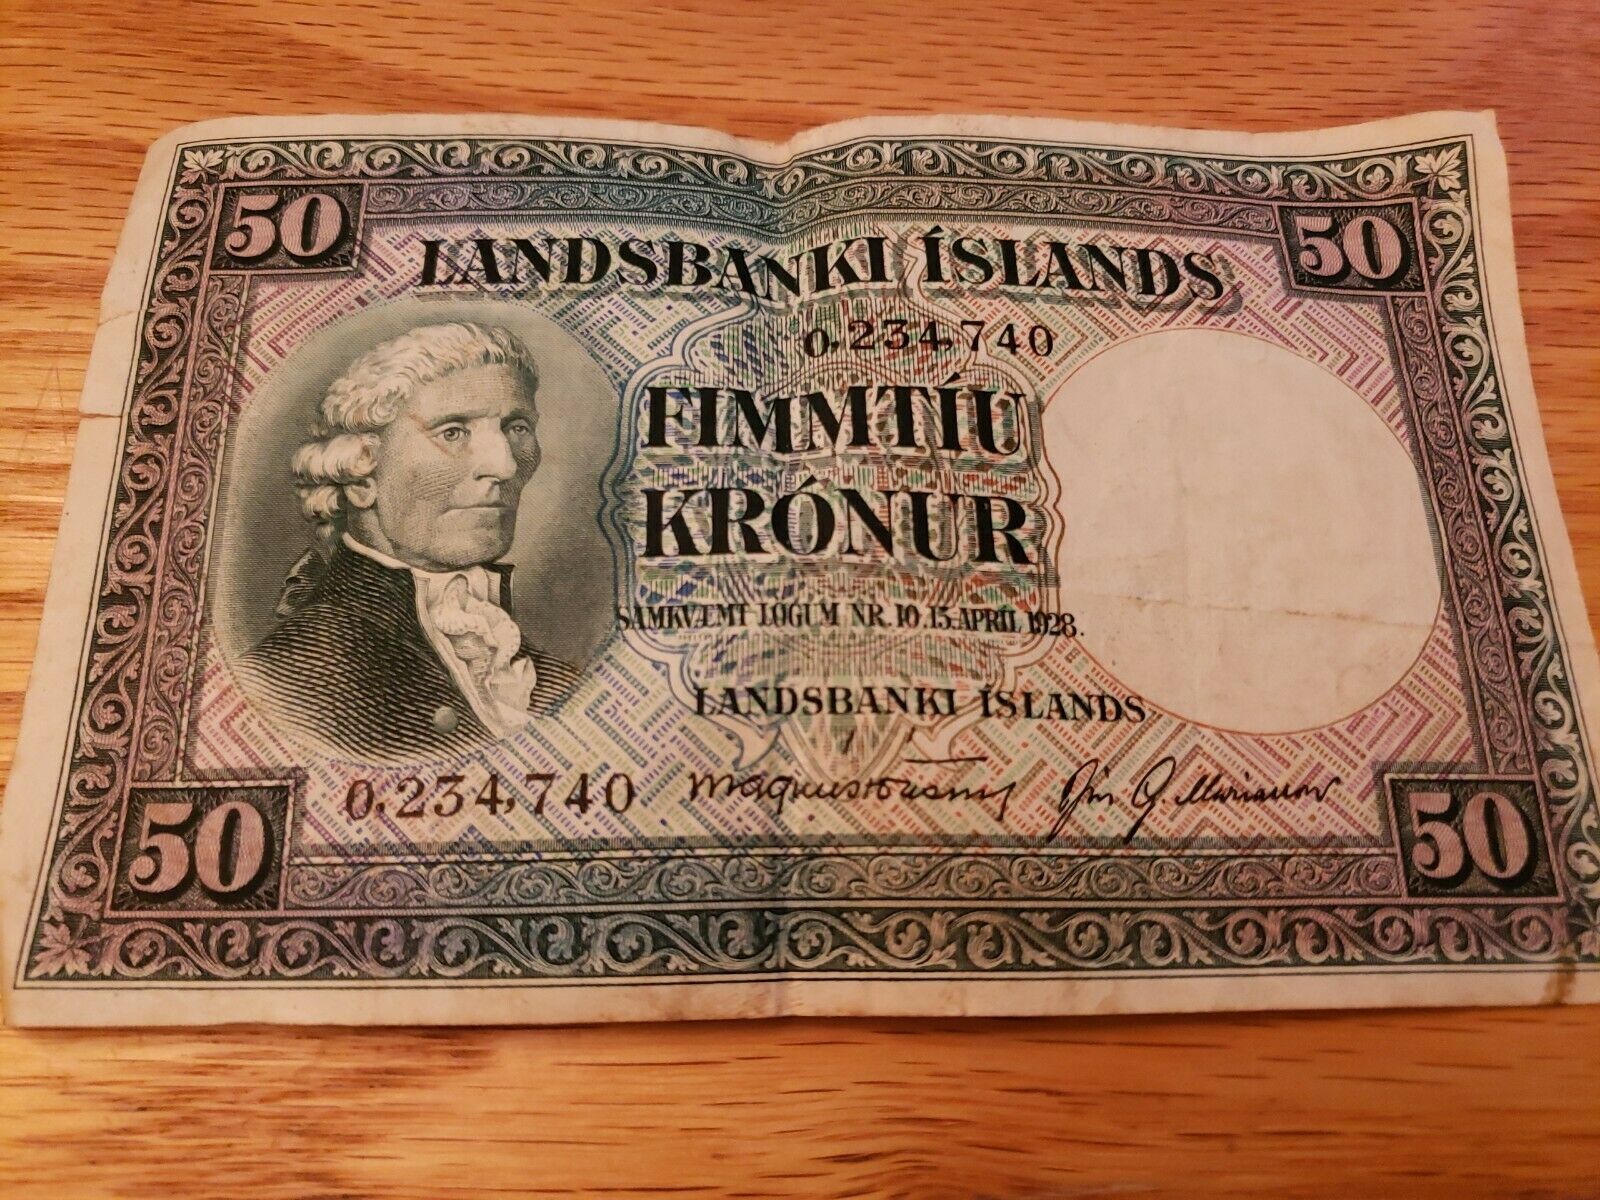 Iceland Landsbanki Islands 50 kronur L 1928